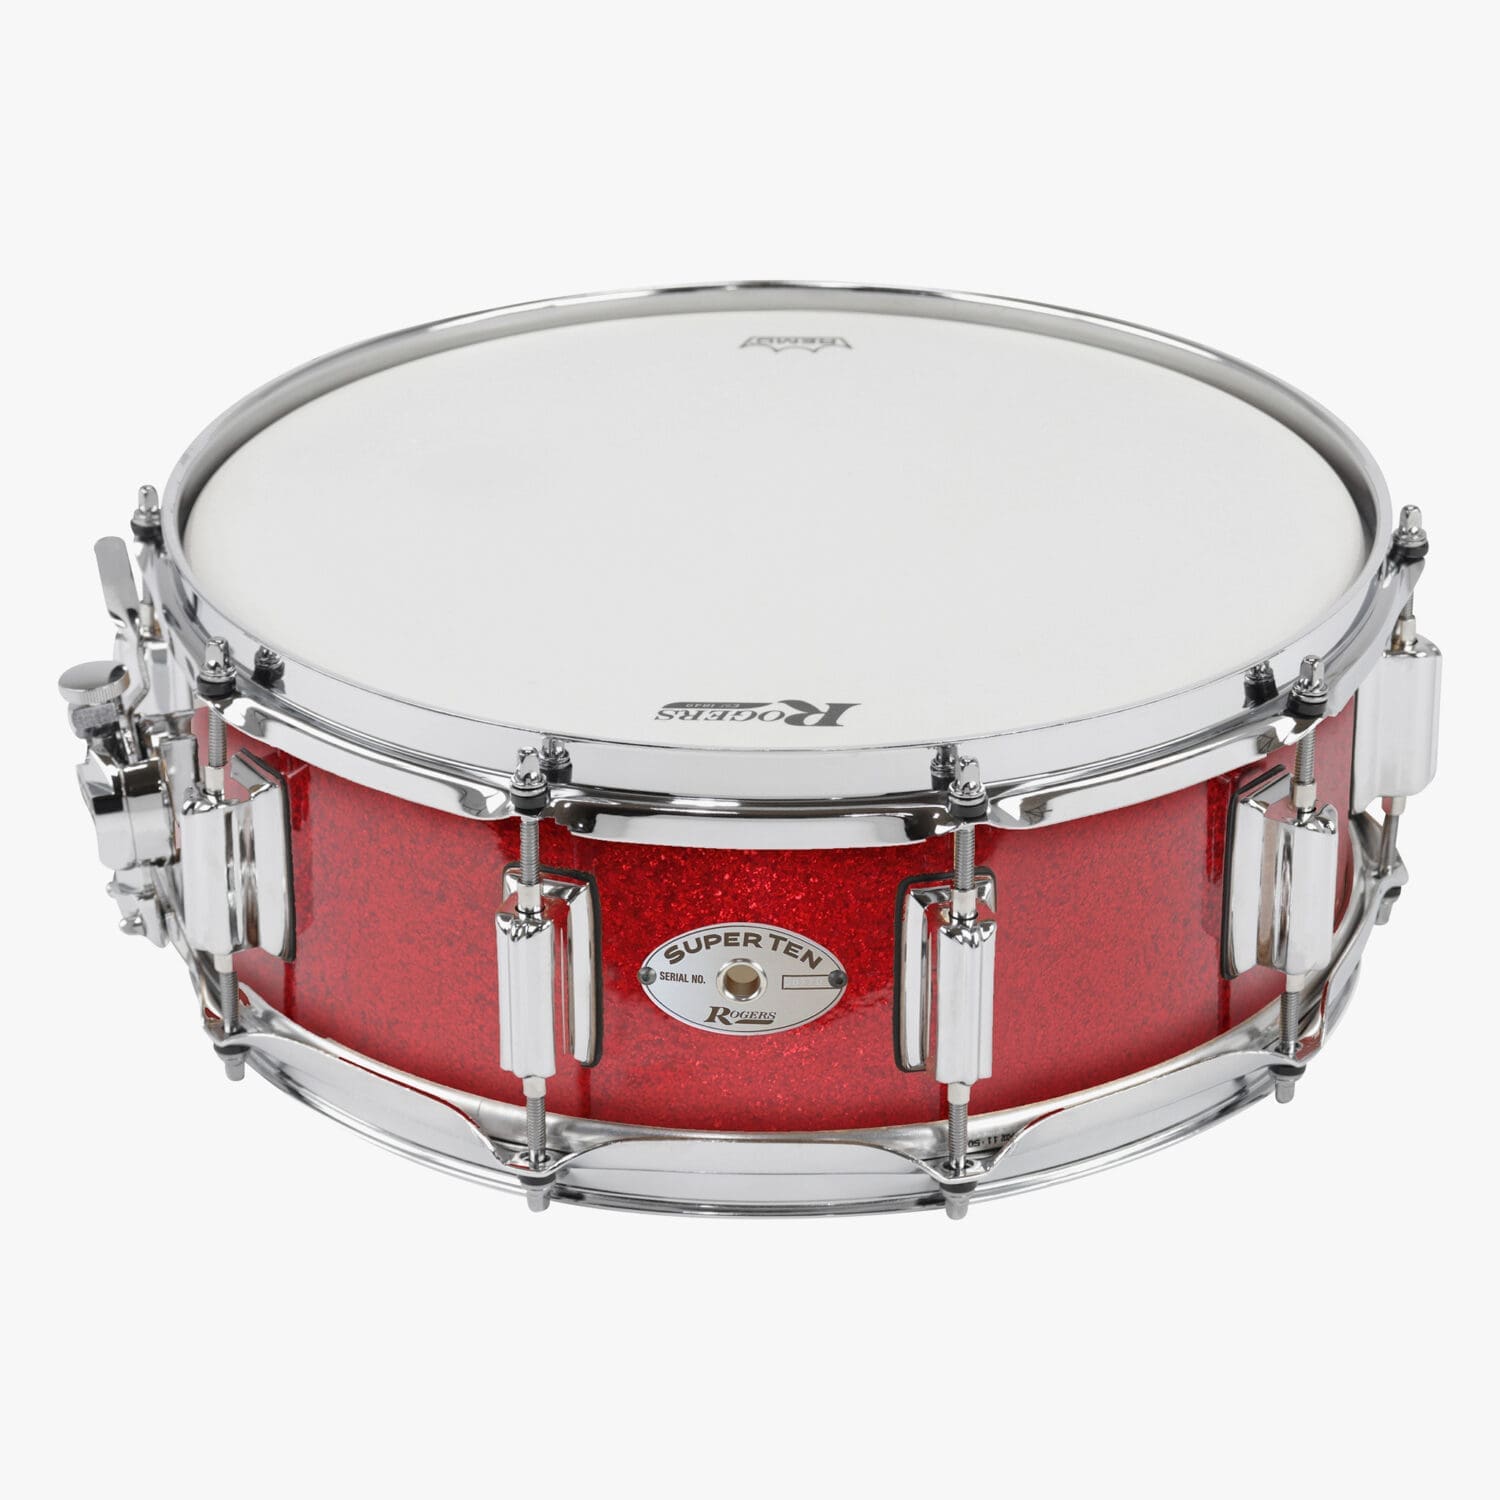 Red Sparkle Wrap SuperTen Snare Drum